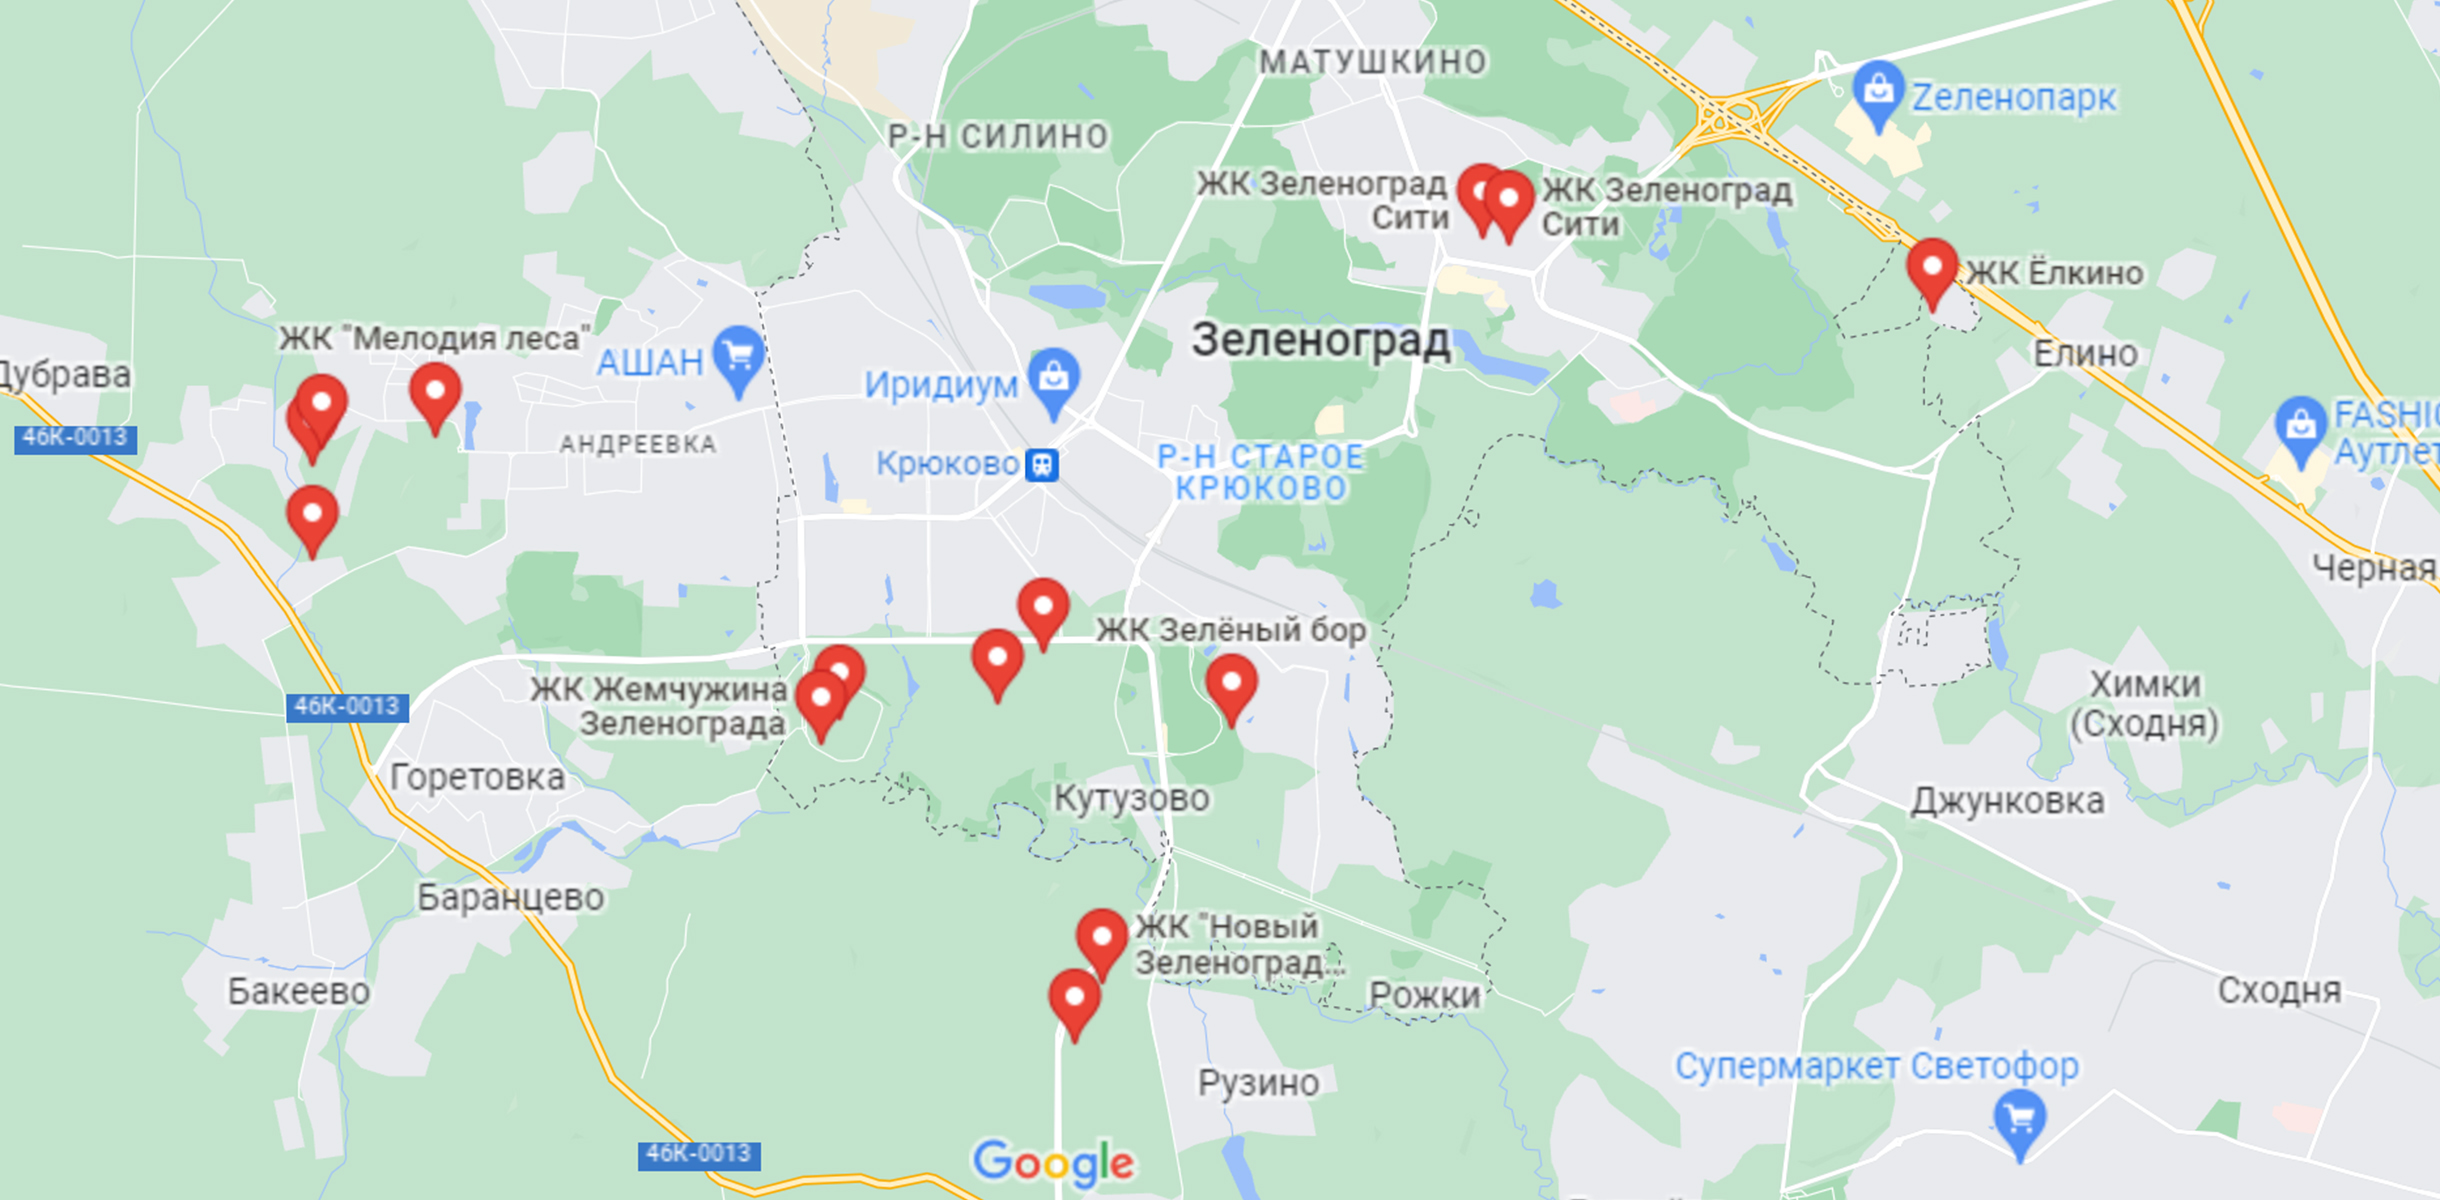 Новые ЖК на карте города. В целом они все похожи и состоят из типовых новостроек, я бы отнесла их к экономклассу. Источник: google.ru